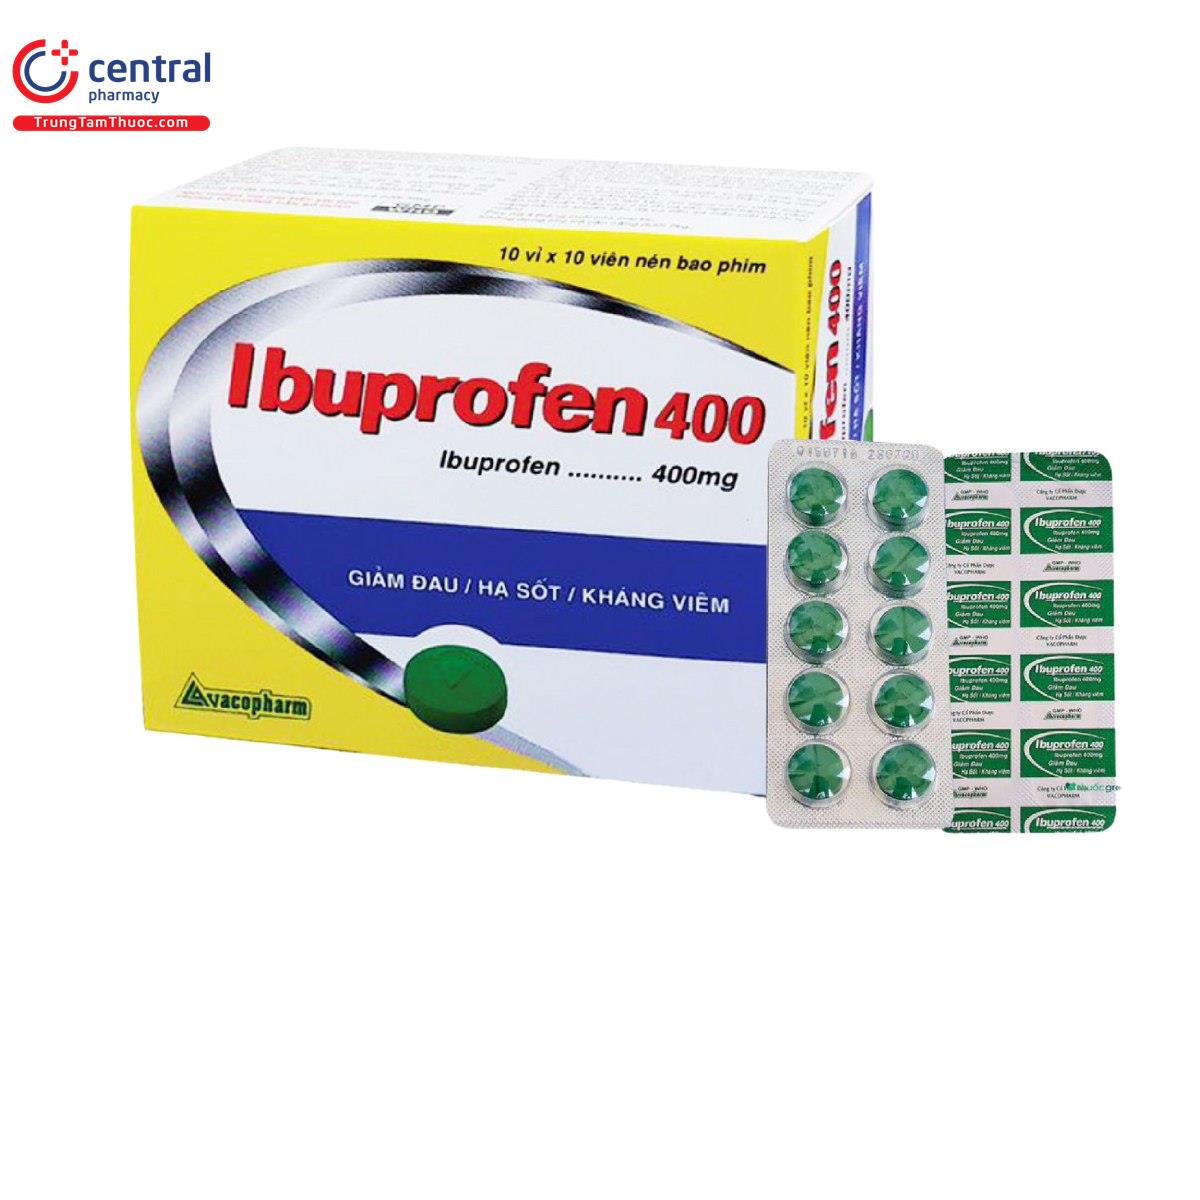 ibuprofen 400 vacopharm 2 A0464